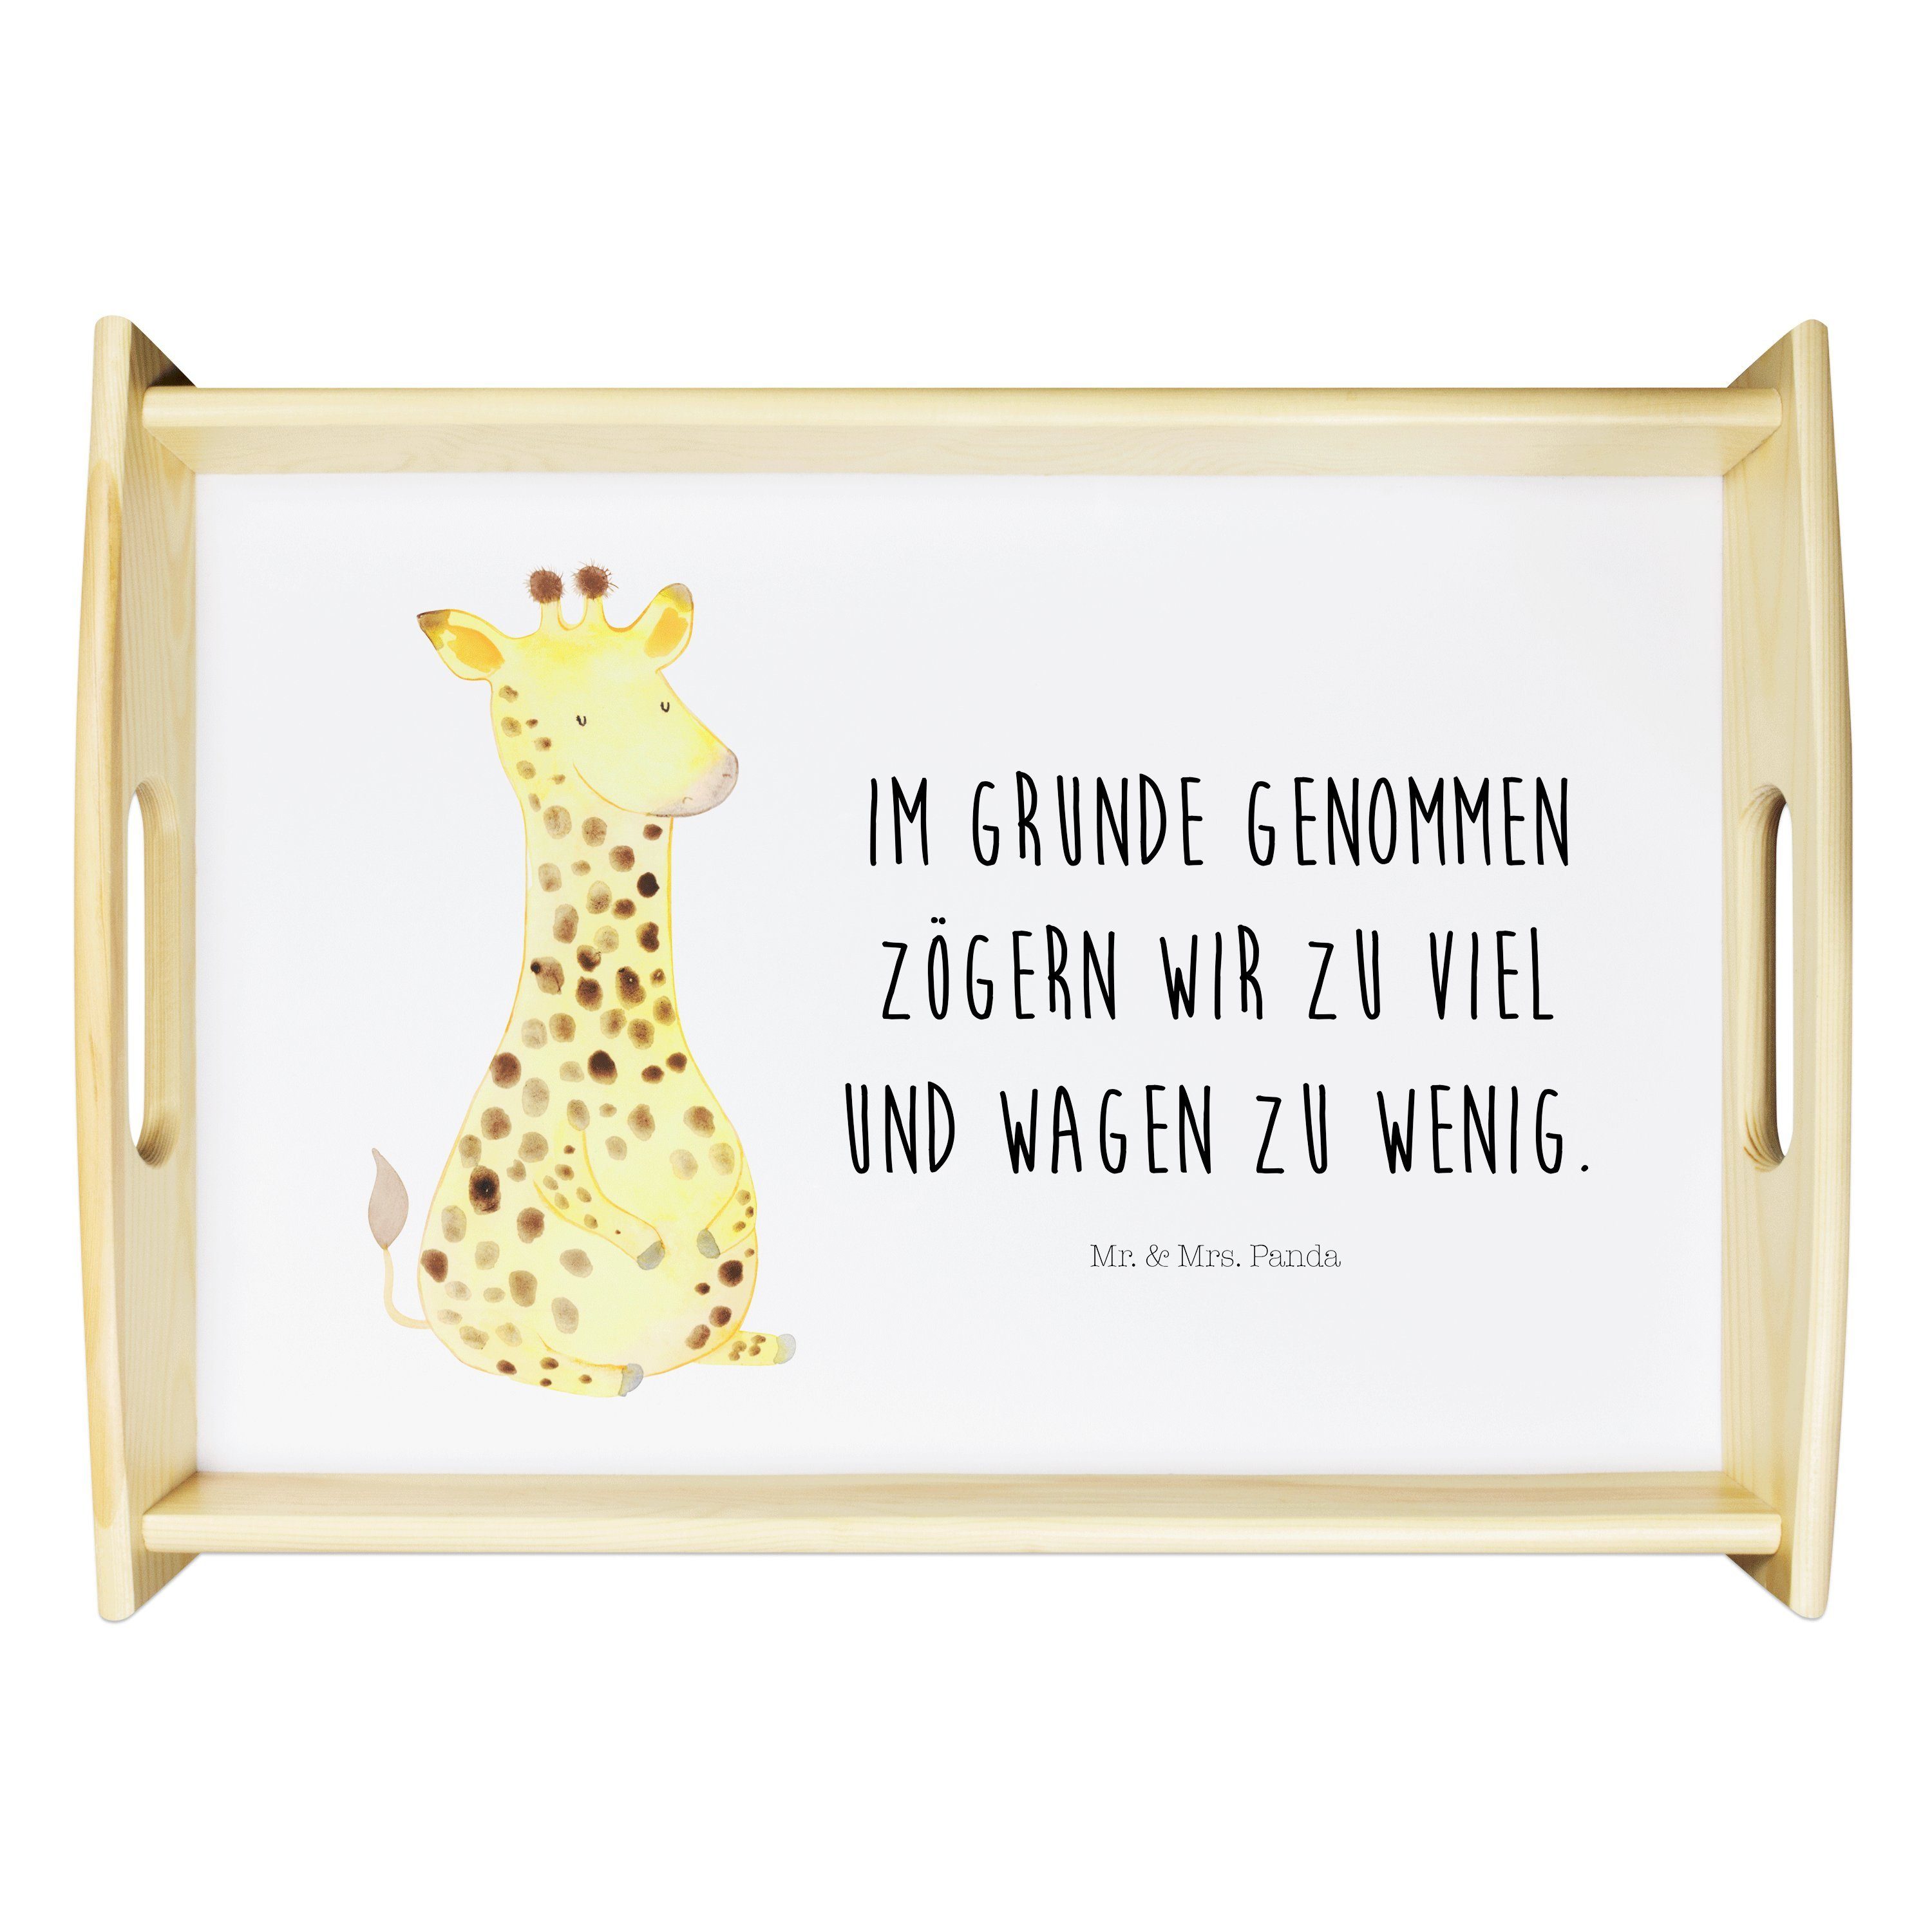 Mrs. - Mr. & Zufrieden Echtholz Geschenk, Weiß Glück, Frühstüc, lasiert, Afrika, Tablett, - Tablett Panda (1-tlg) Giraffe